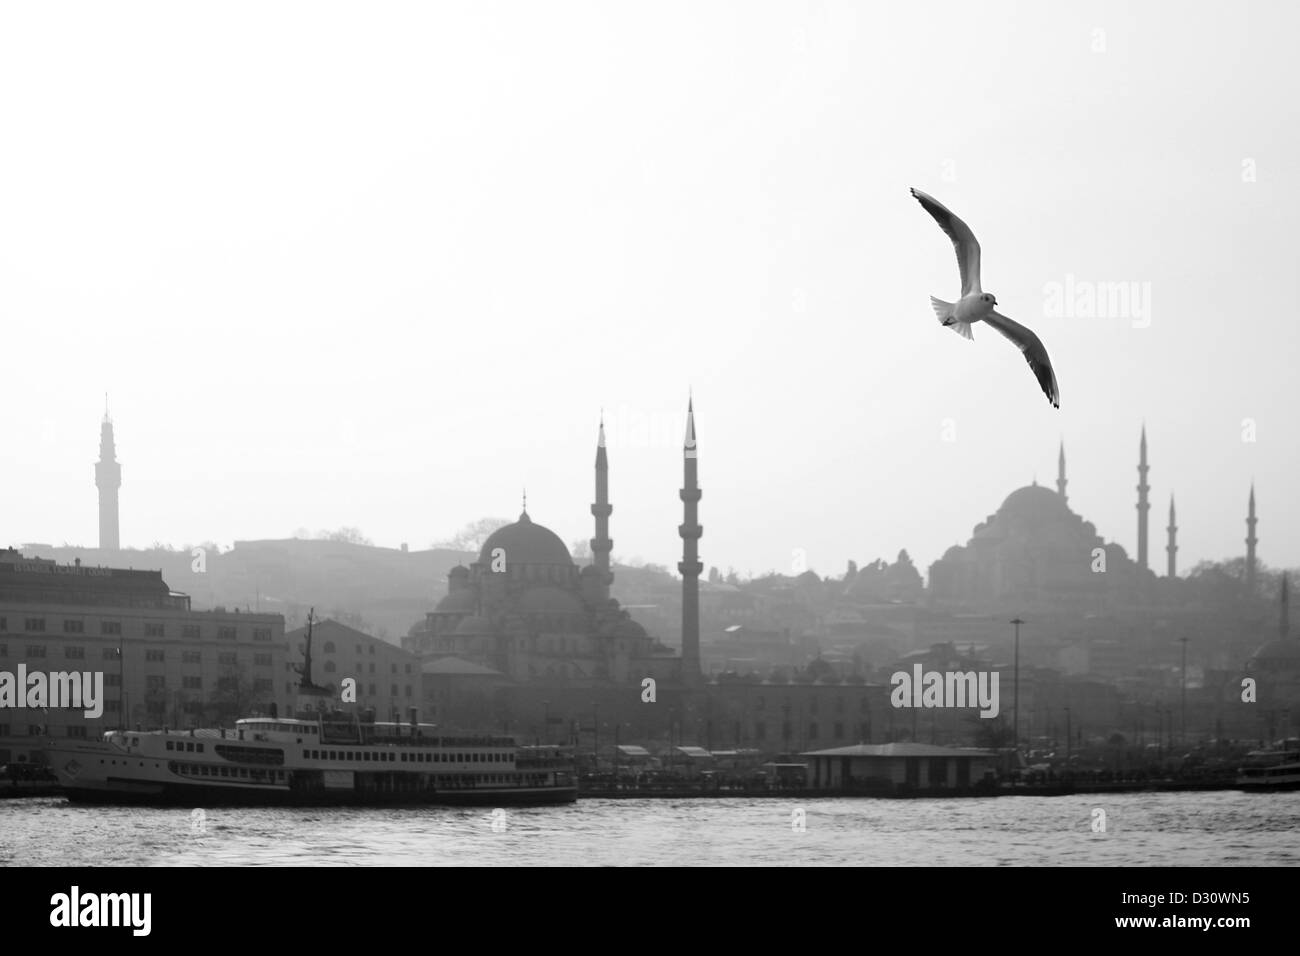 ISTANBUL Turquie - Seagull sur tour Beyazit, nouvelle mosquée (Yeni Camii), Mosquée de Suleymaniye Camii (Suleyman) à Eminönü, Golden Horn Banque D'Images